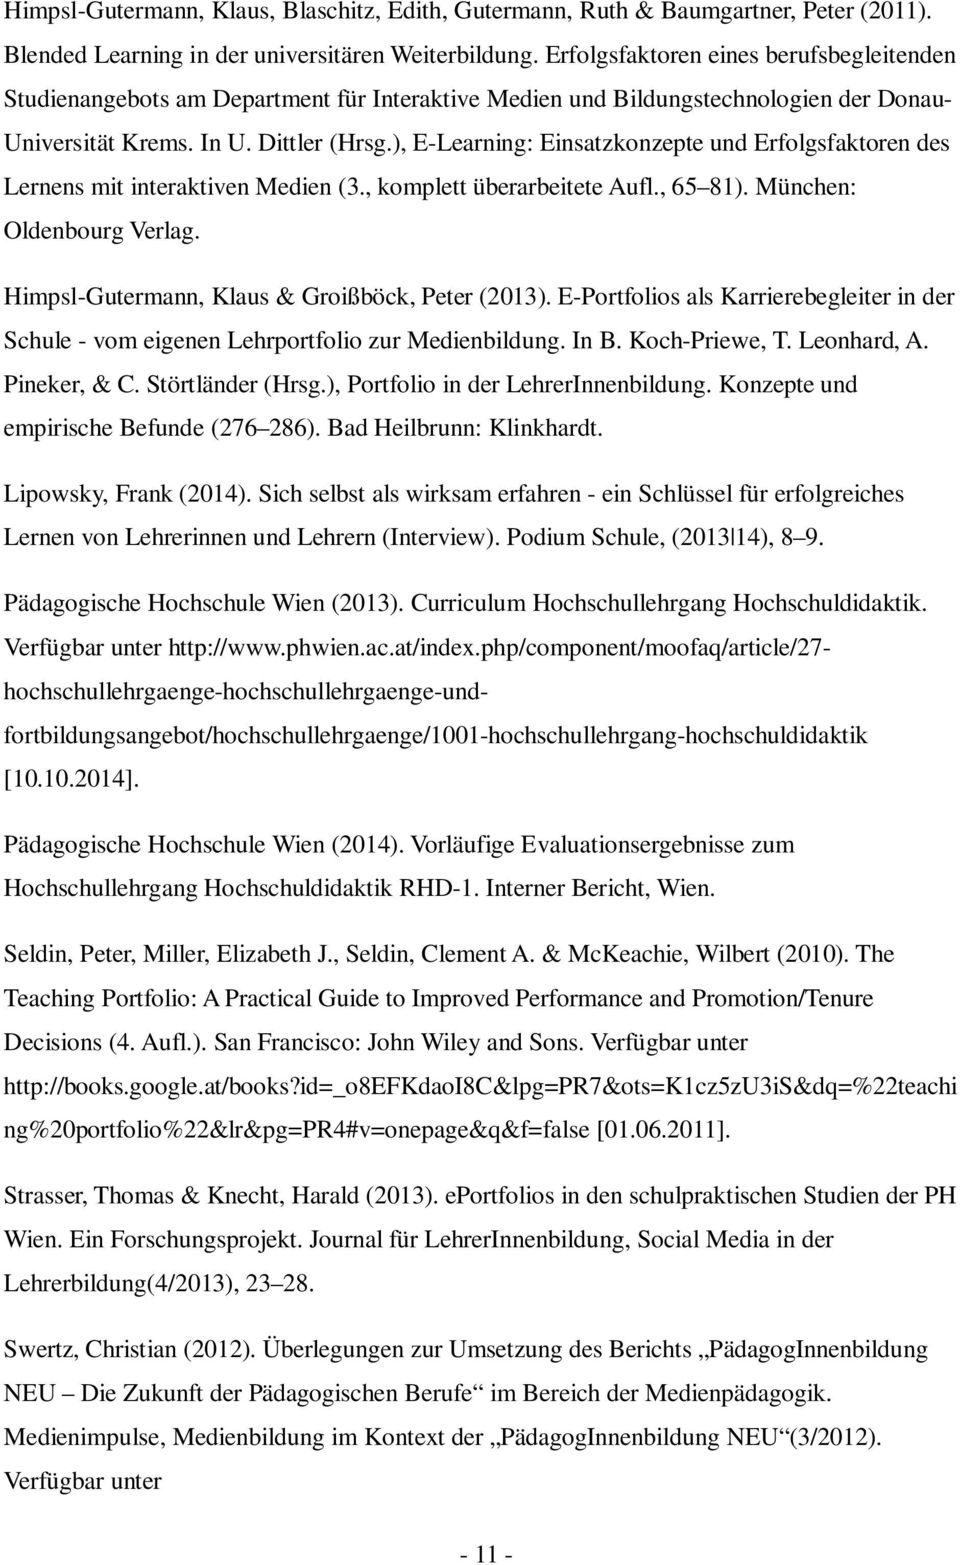 ), E-Learning: Einsatzkonzepte und Erfolgsfaktoren des Lernens mit interaktiven Medien (3., komplett überarbeitete Aufl., 65 81). München: Oldenbourg Verlag.